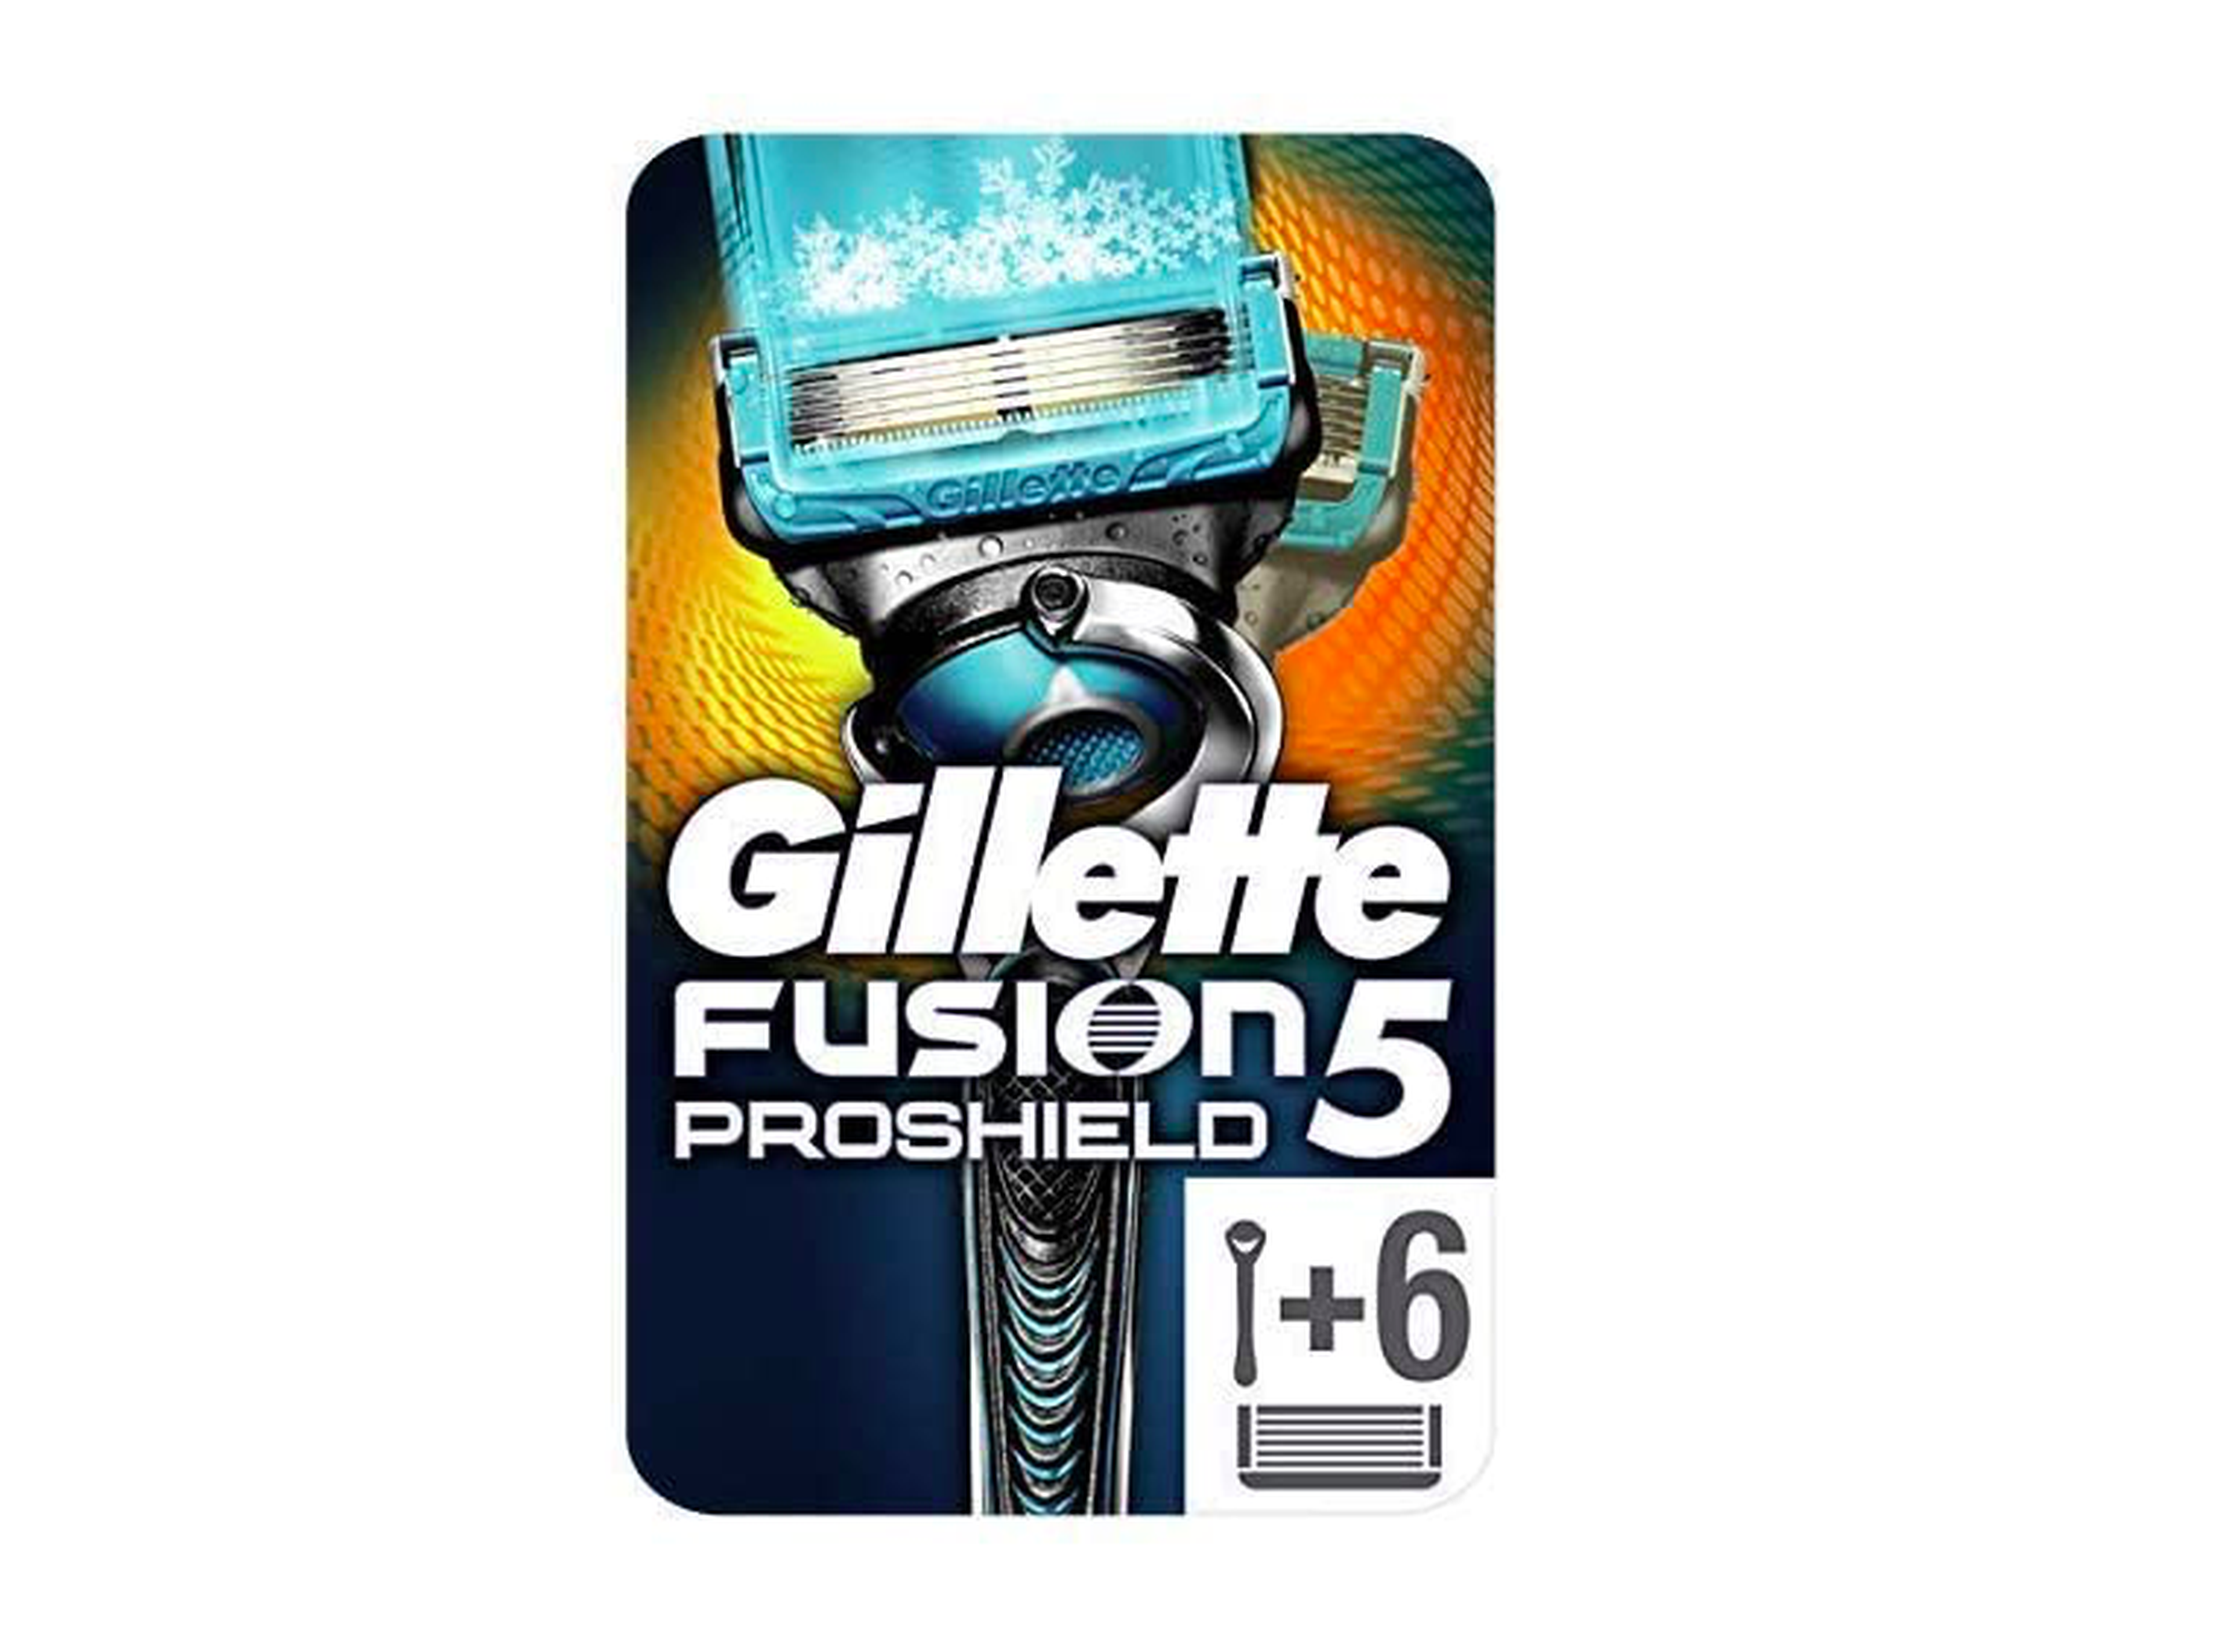 Gillette Fusion5 ProShield Chill maquinilla de afeitar + 6 cuchillas de recambio.